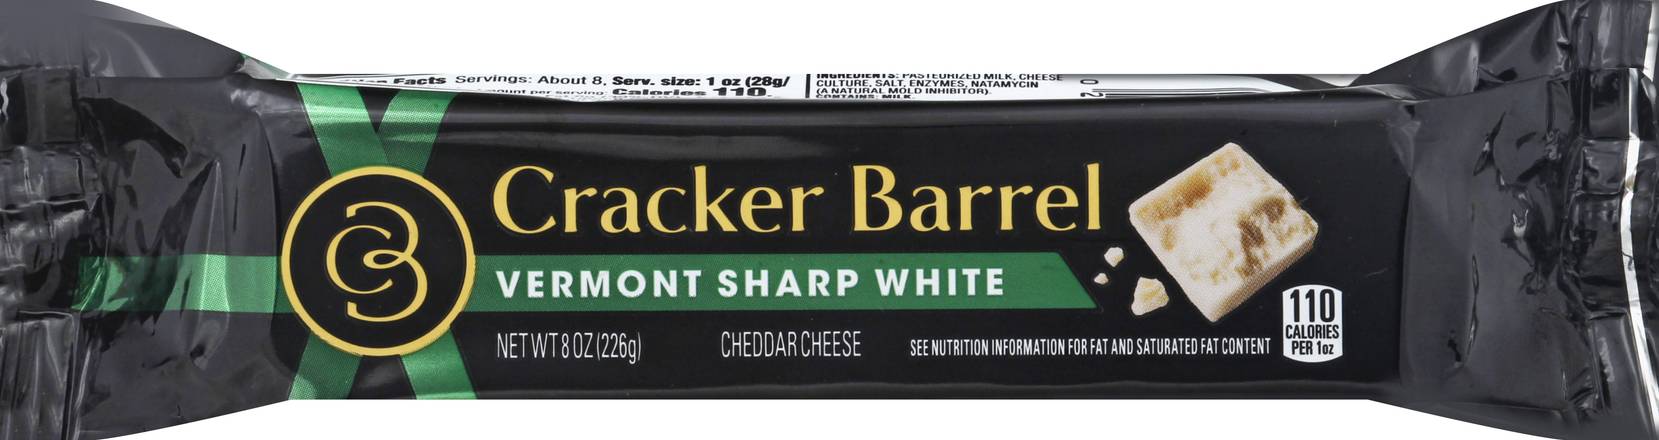 Cracker Barrel Vermont Sharp White Cheddar Cheese